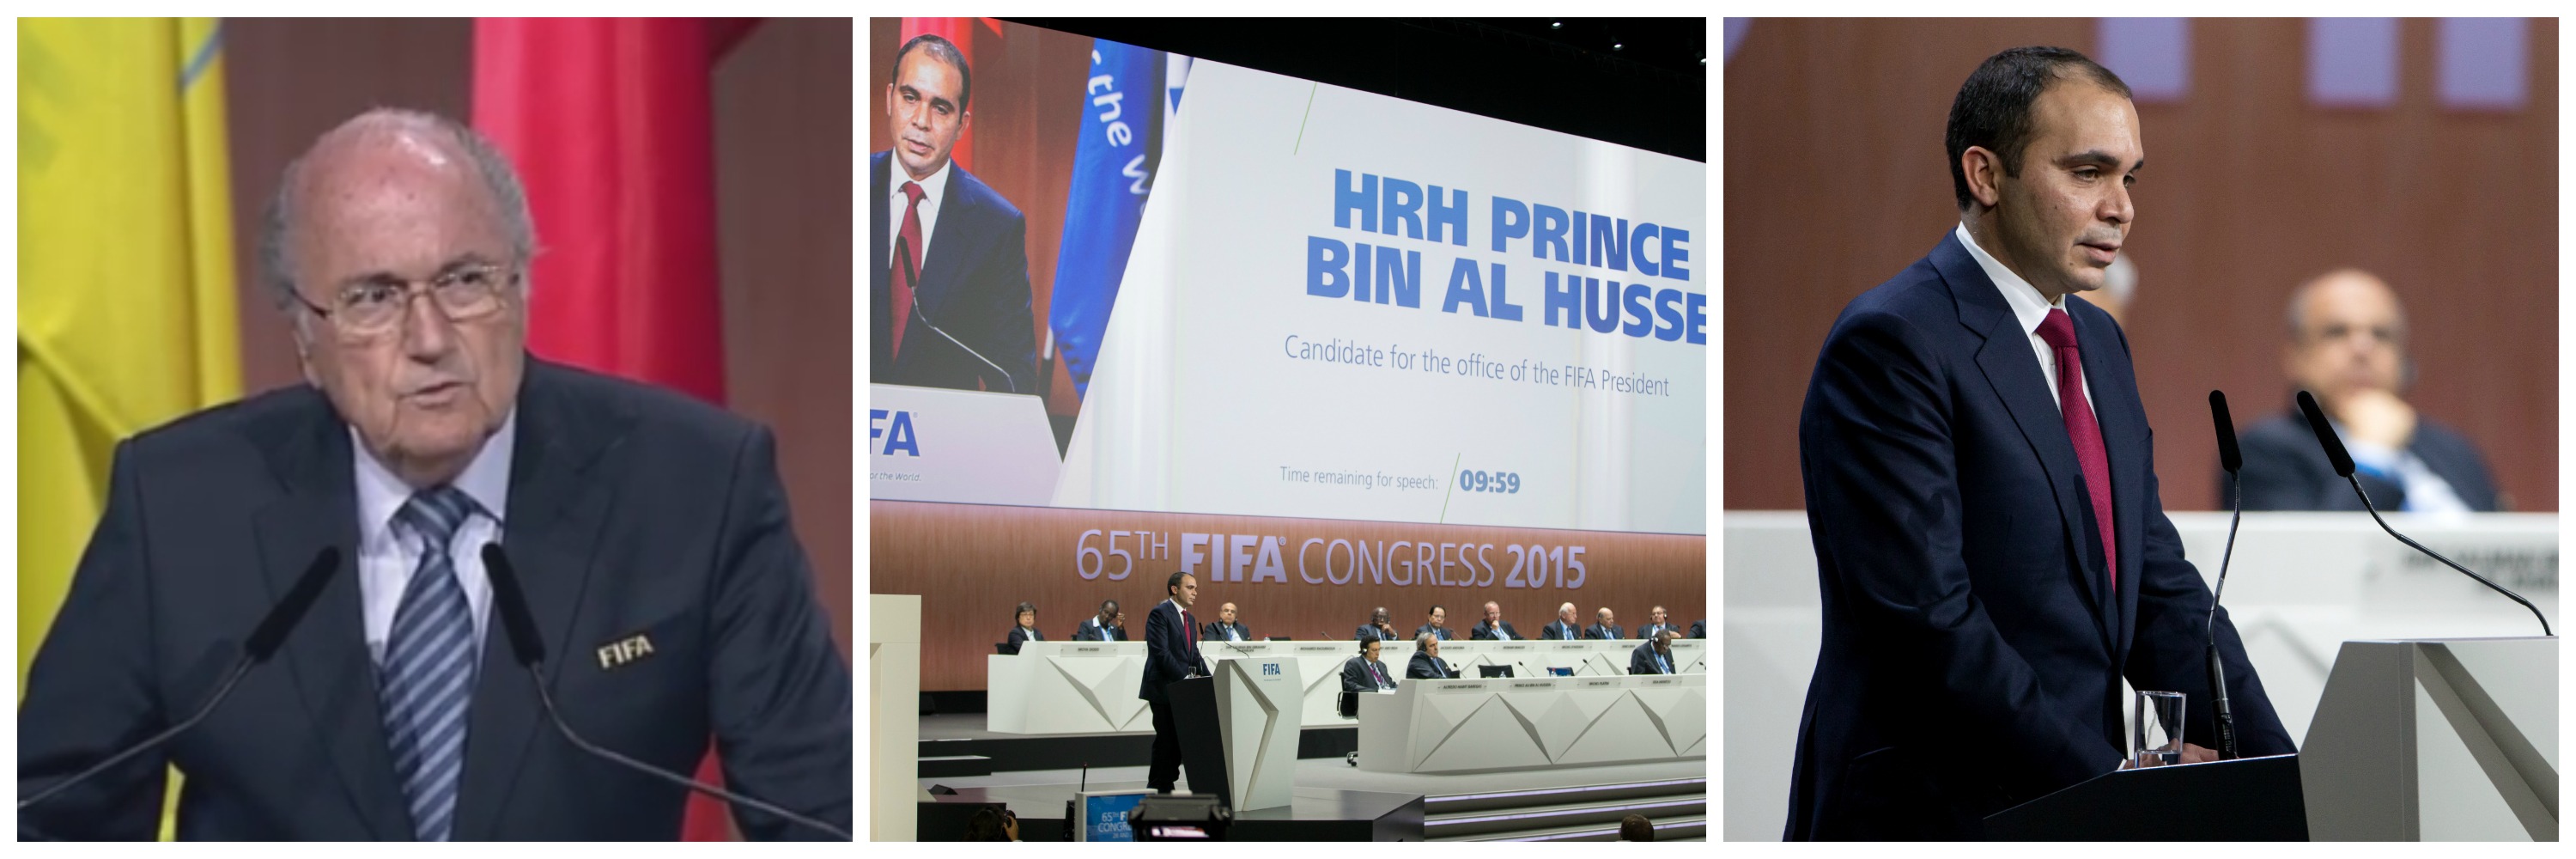 Sepp Blatter ramane presedinte al FIFA, dupa retragerea lui Ali Bin Al-Hussein. Primele declaratii ale celor doi - Imaginea 6